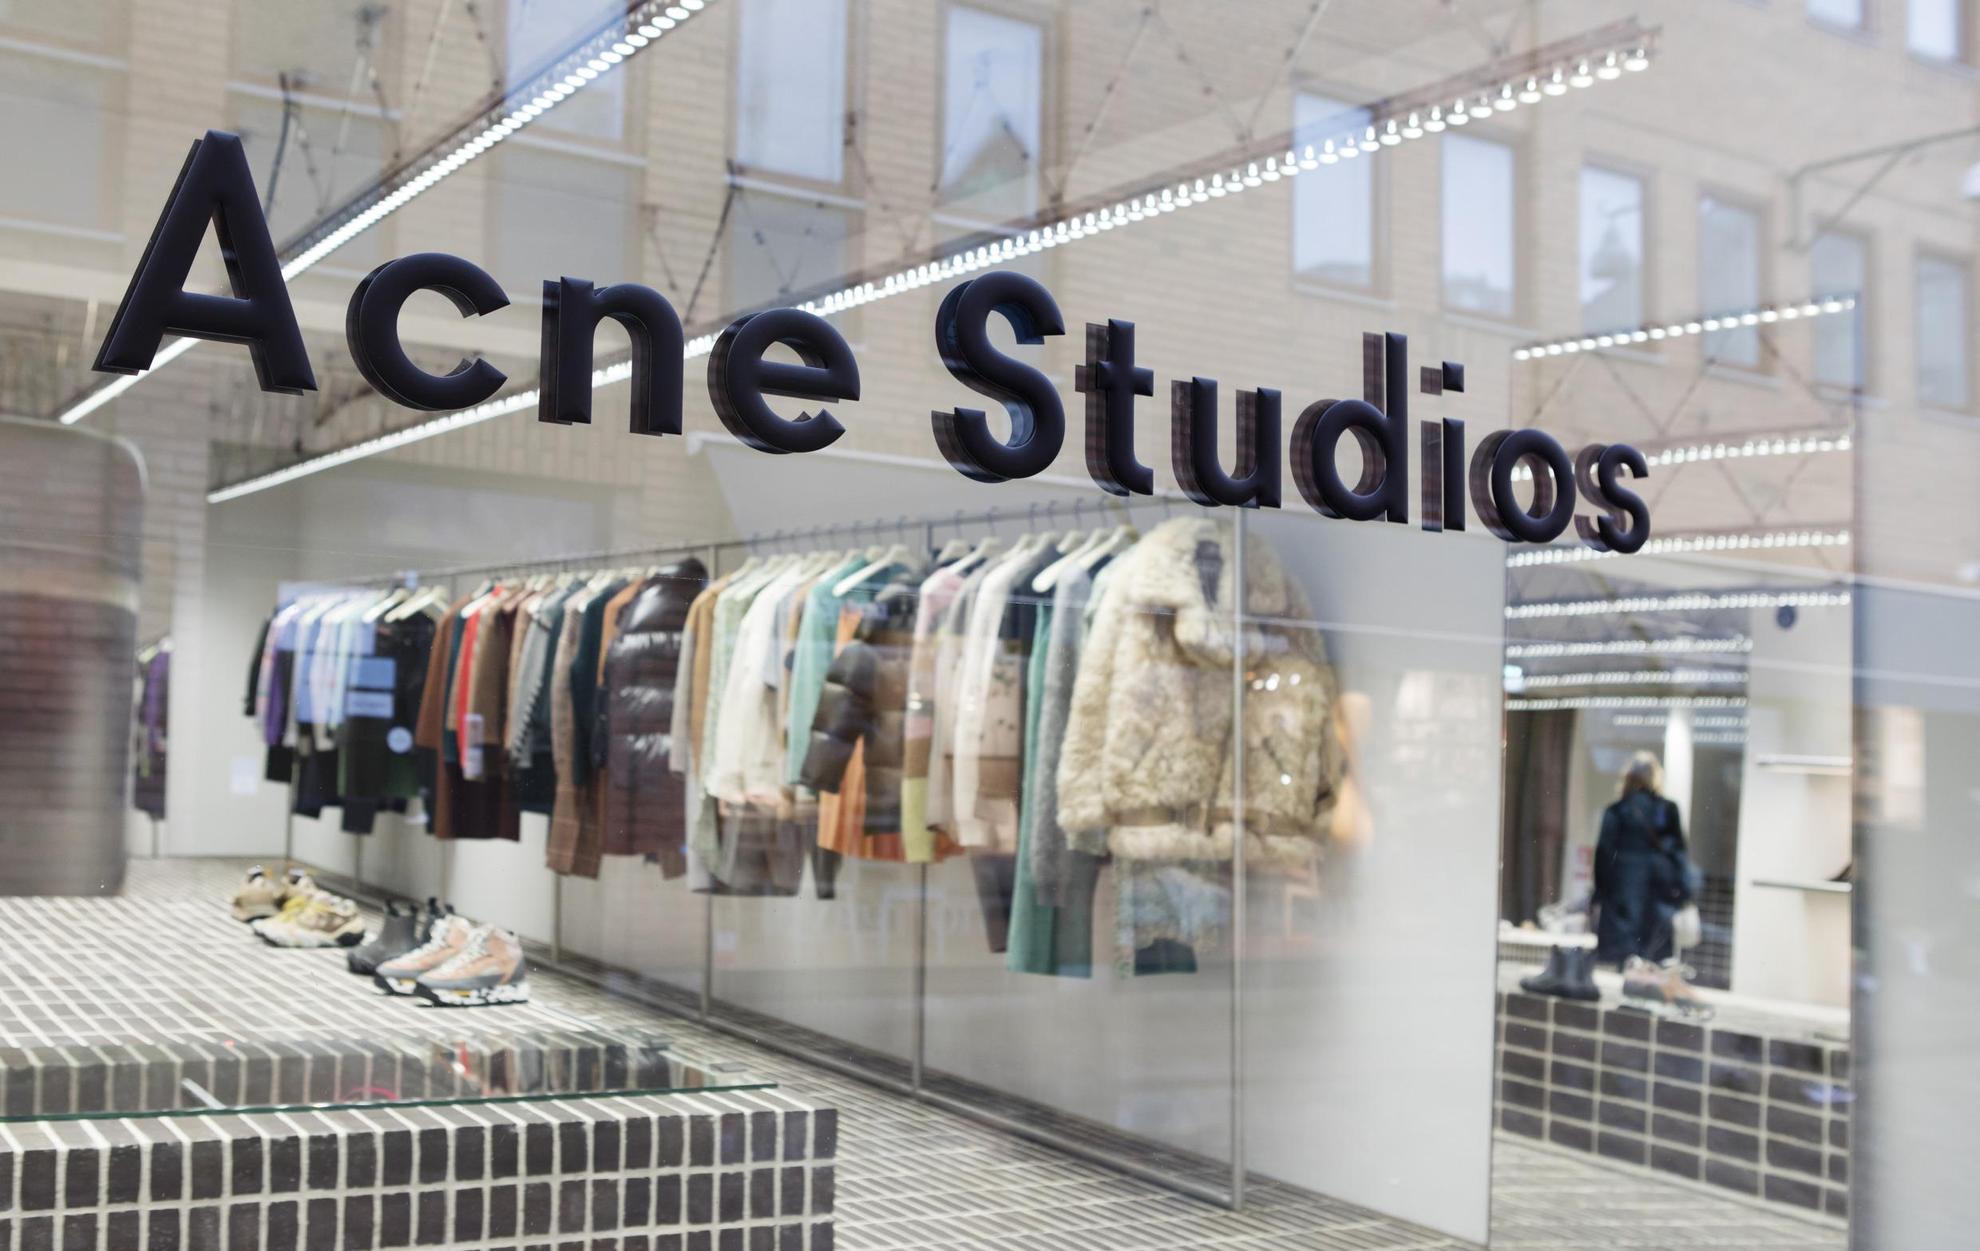 Een etalage met een bord waarop Acne Studios staat. Binnen zie je een rek met verschillende kleding en wat schoenen.